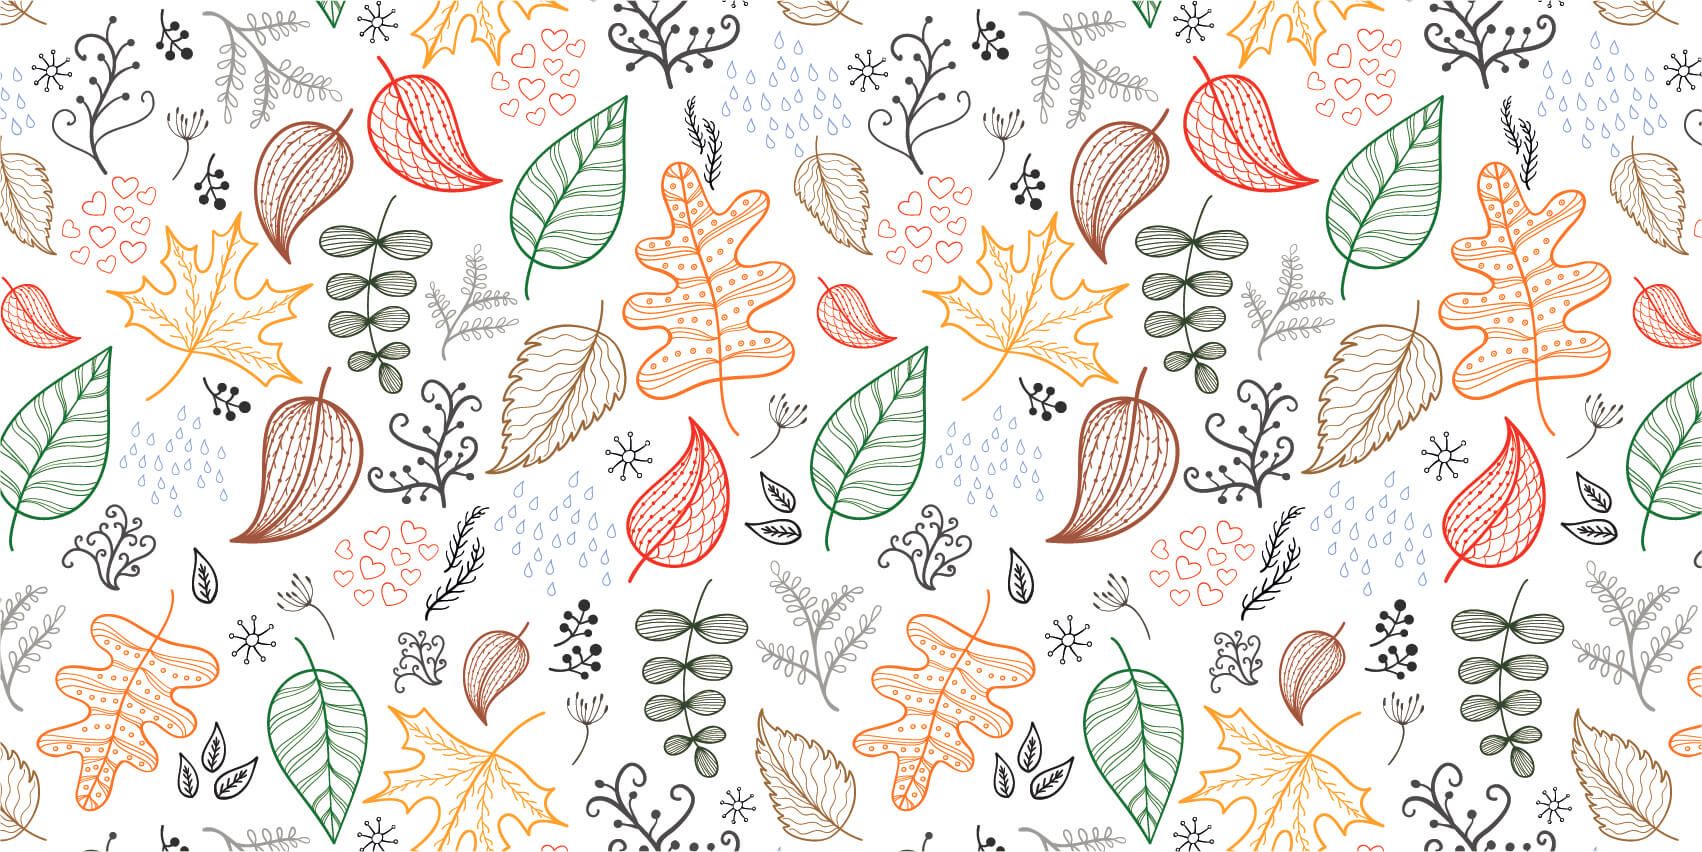 Leaves - Getekende herfstbladeren - Hobbykamer